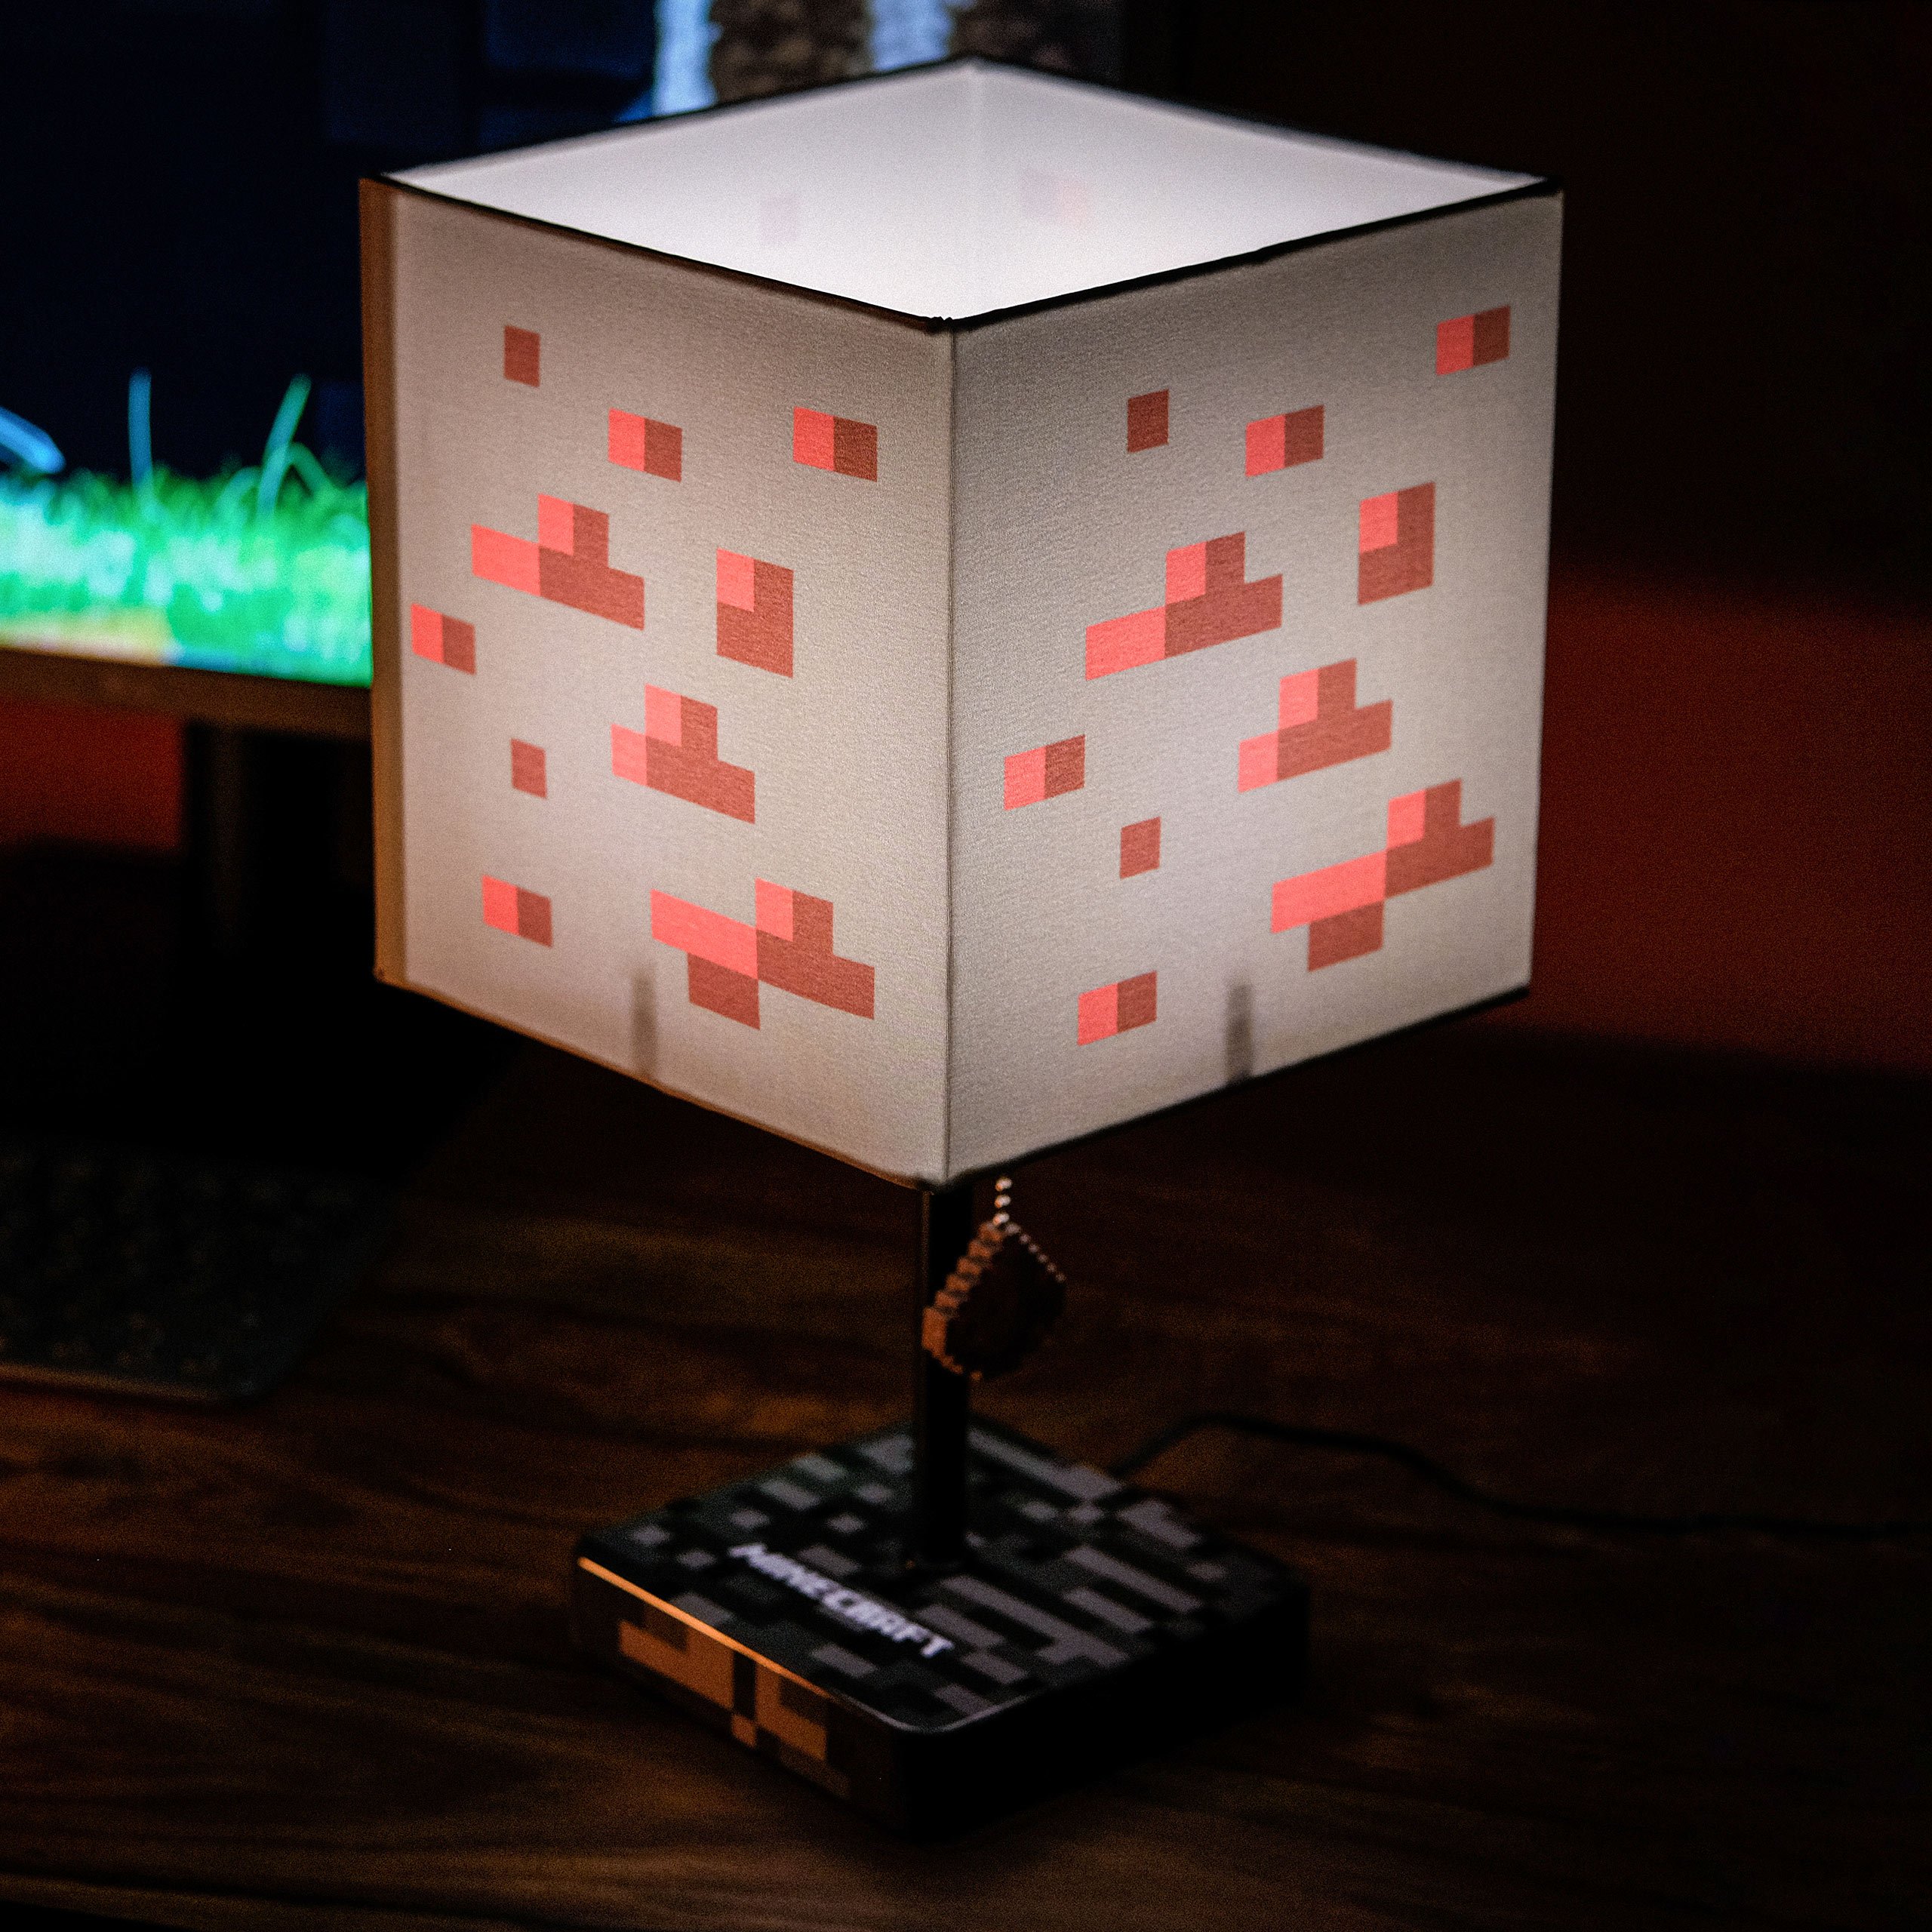 Lampe - Minecraft - Redstone